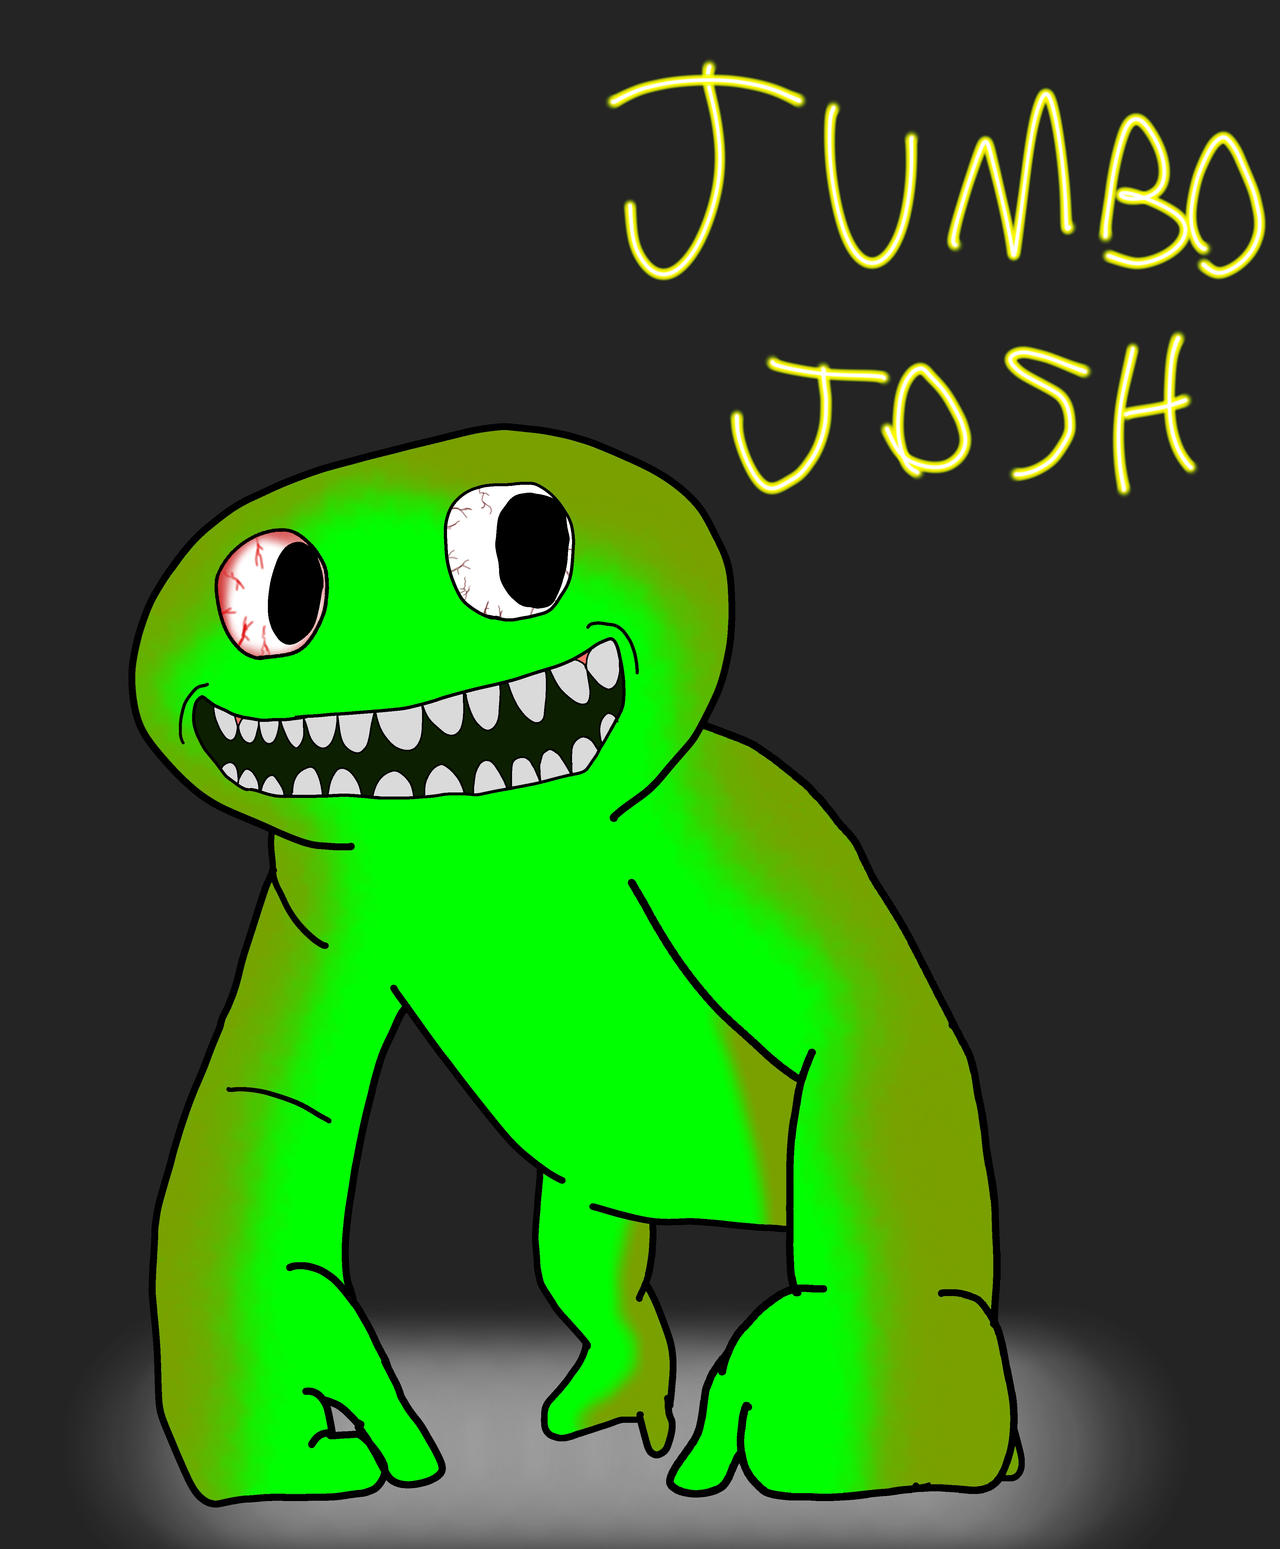 Im Jumbo Josh Brah by JJMonsterJ on DeviantArt